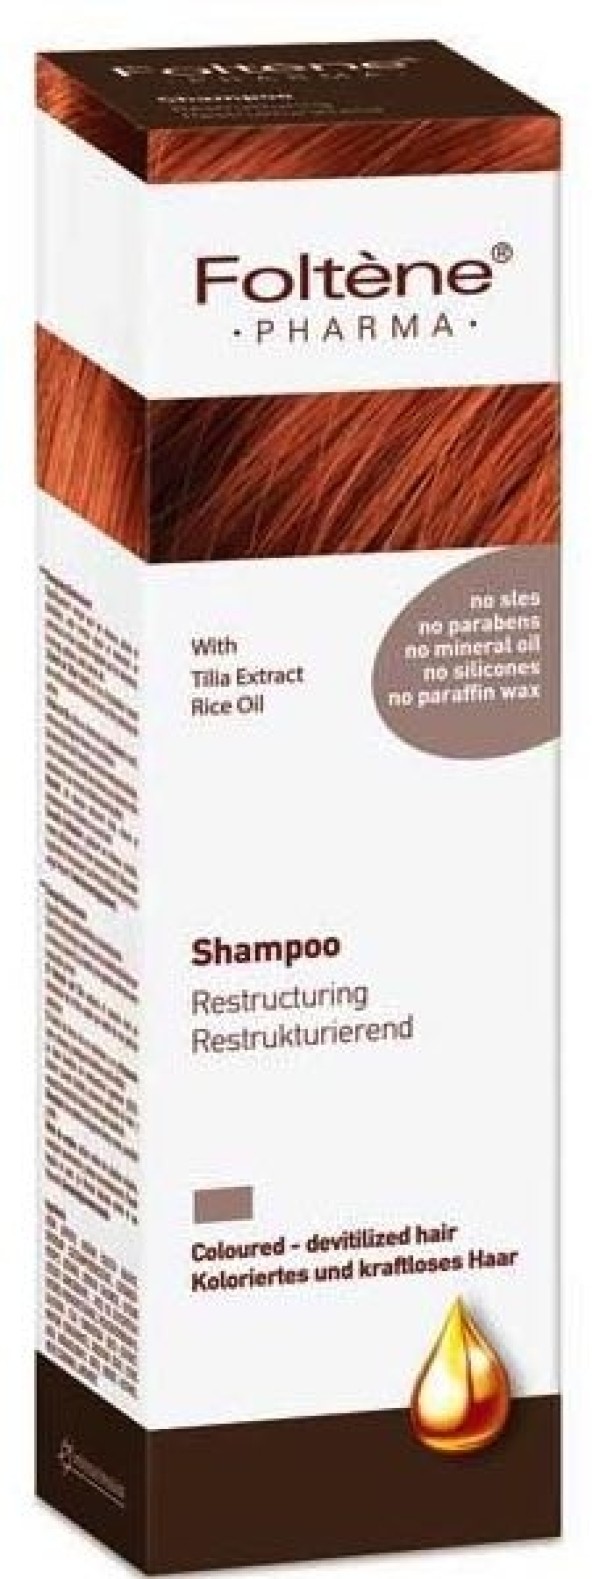 Foltene Shampoo …